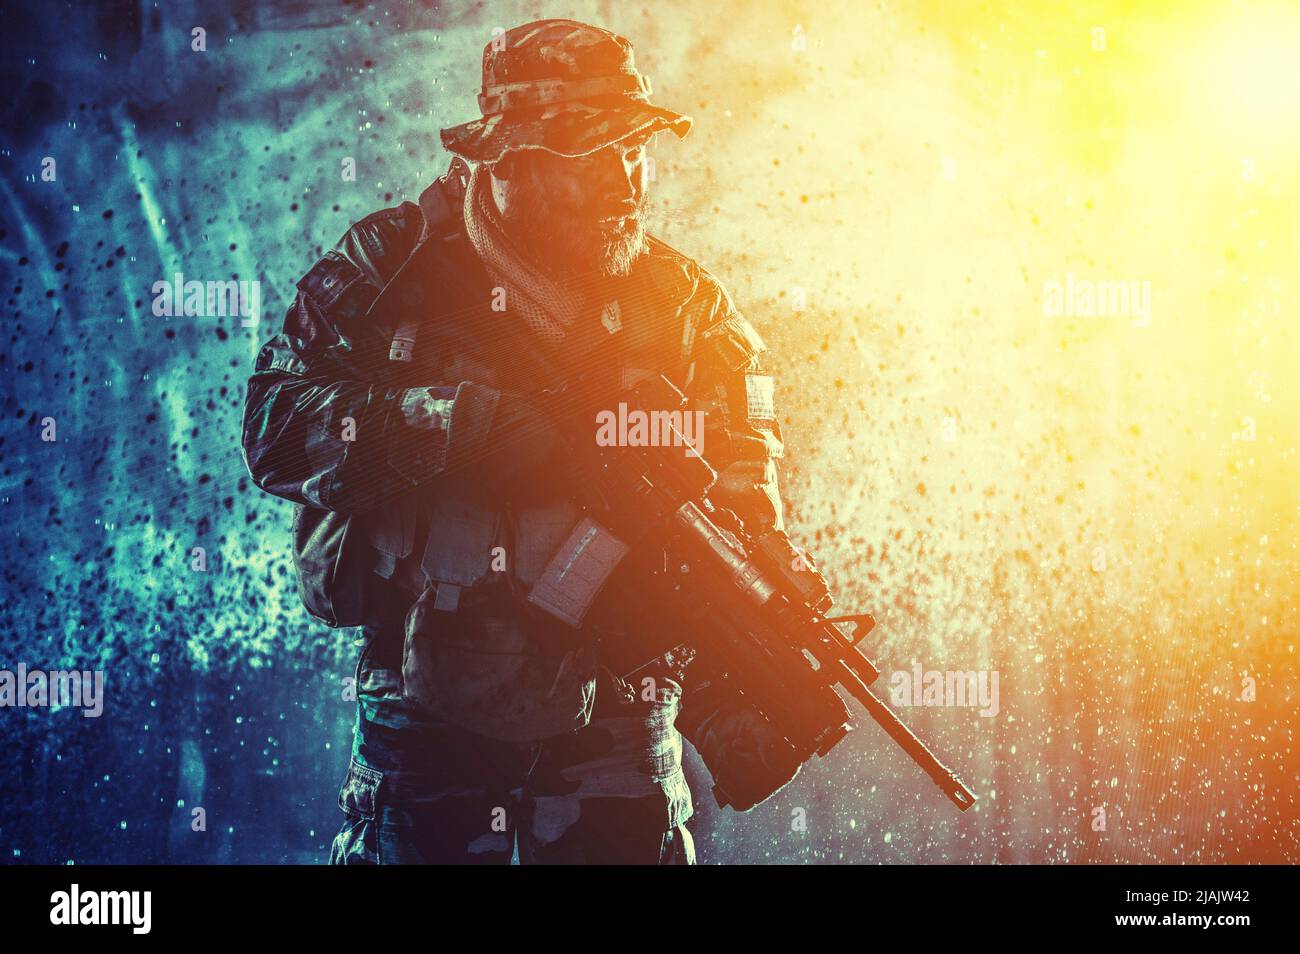 Comando combattente con fucile d'assalto, sneaking nelle tenebre pronto a combattere. Foto Stock